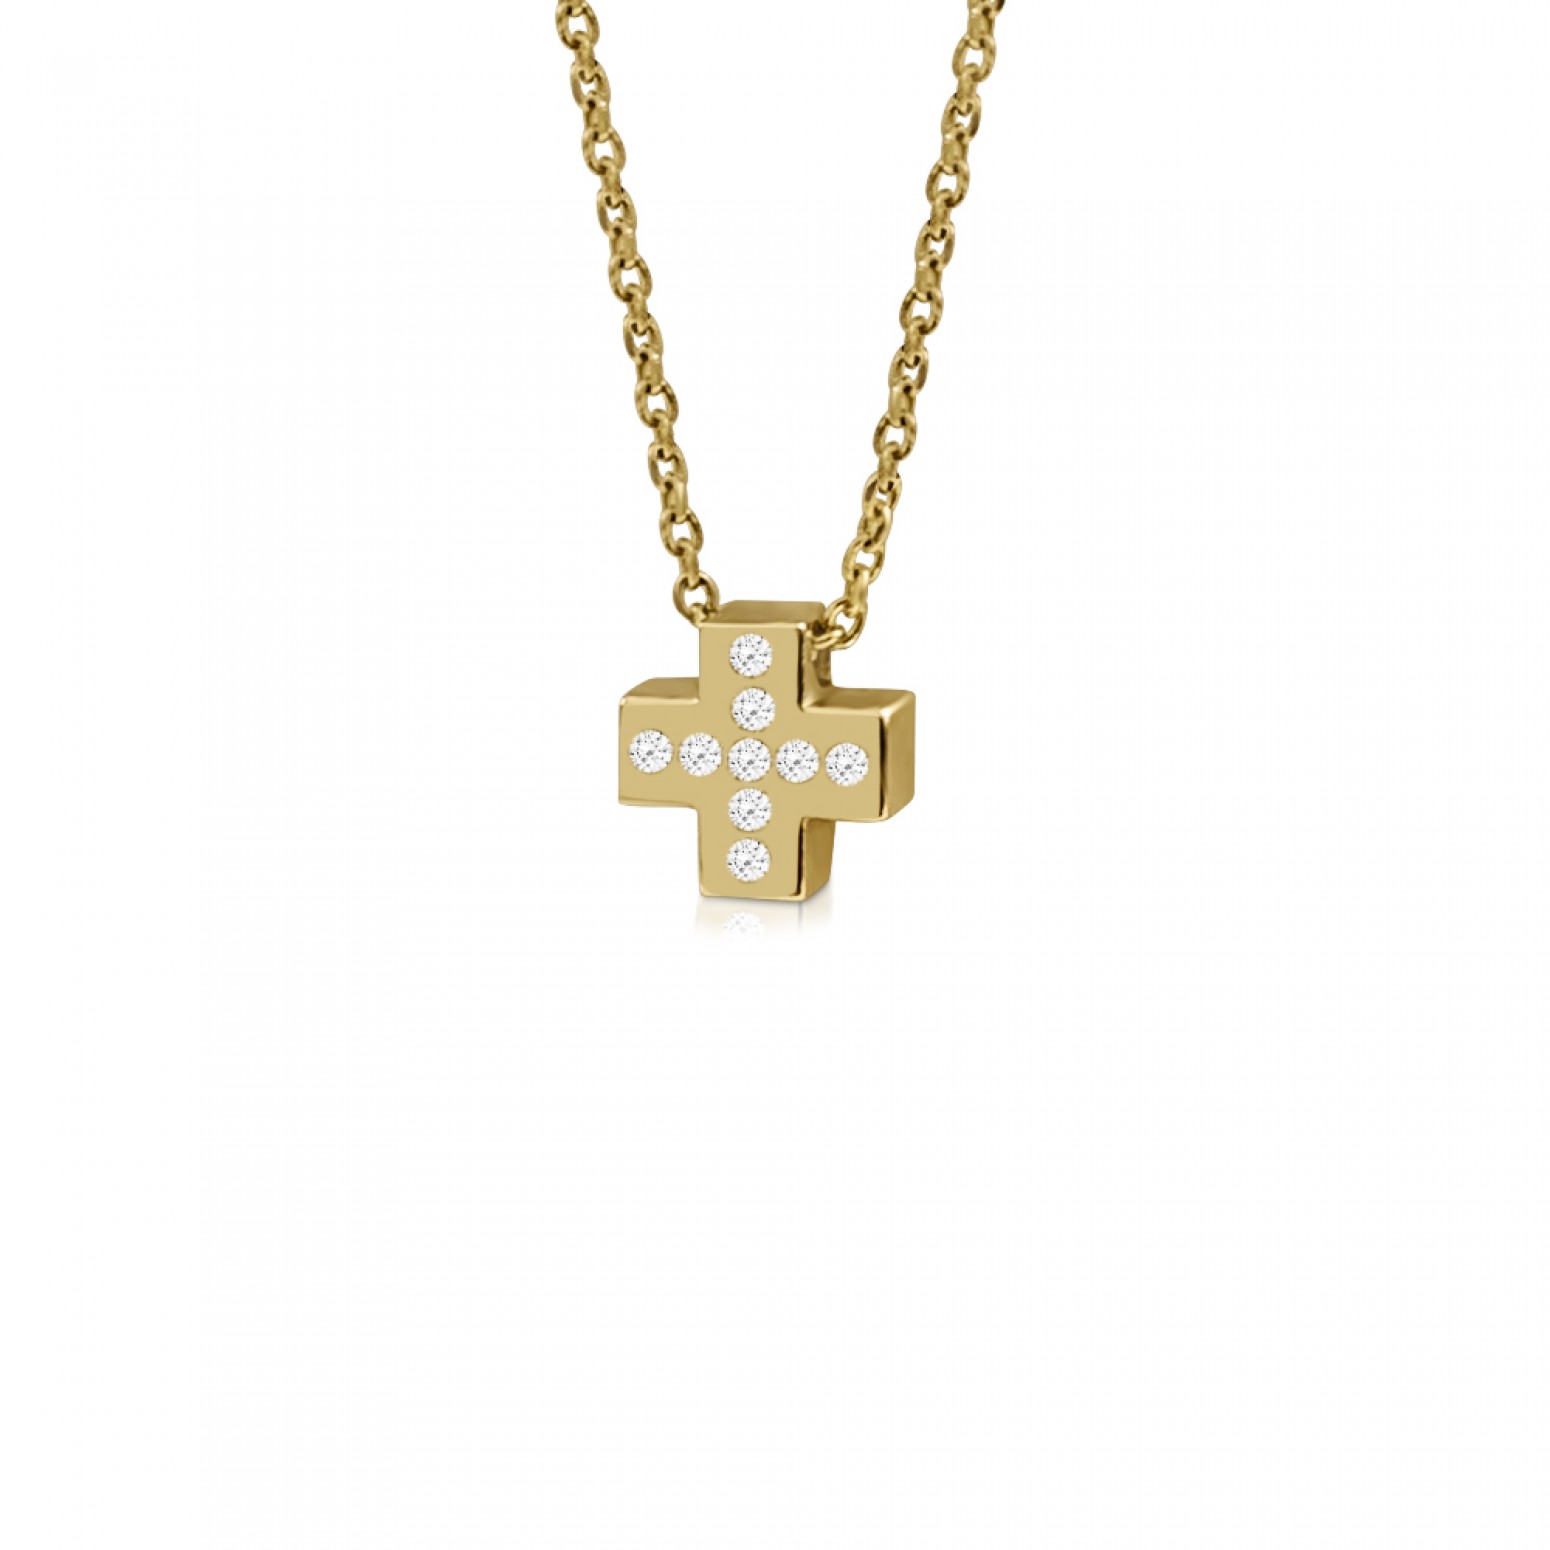 Cross necklace, Κ9 gold with zircon, ko3775 NECKLACES Κοσμηματα - chrilia.gr